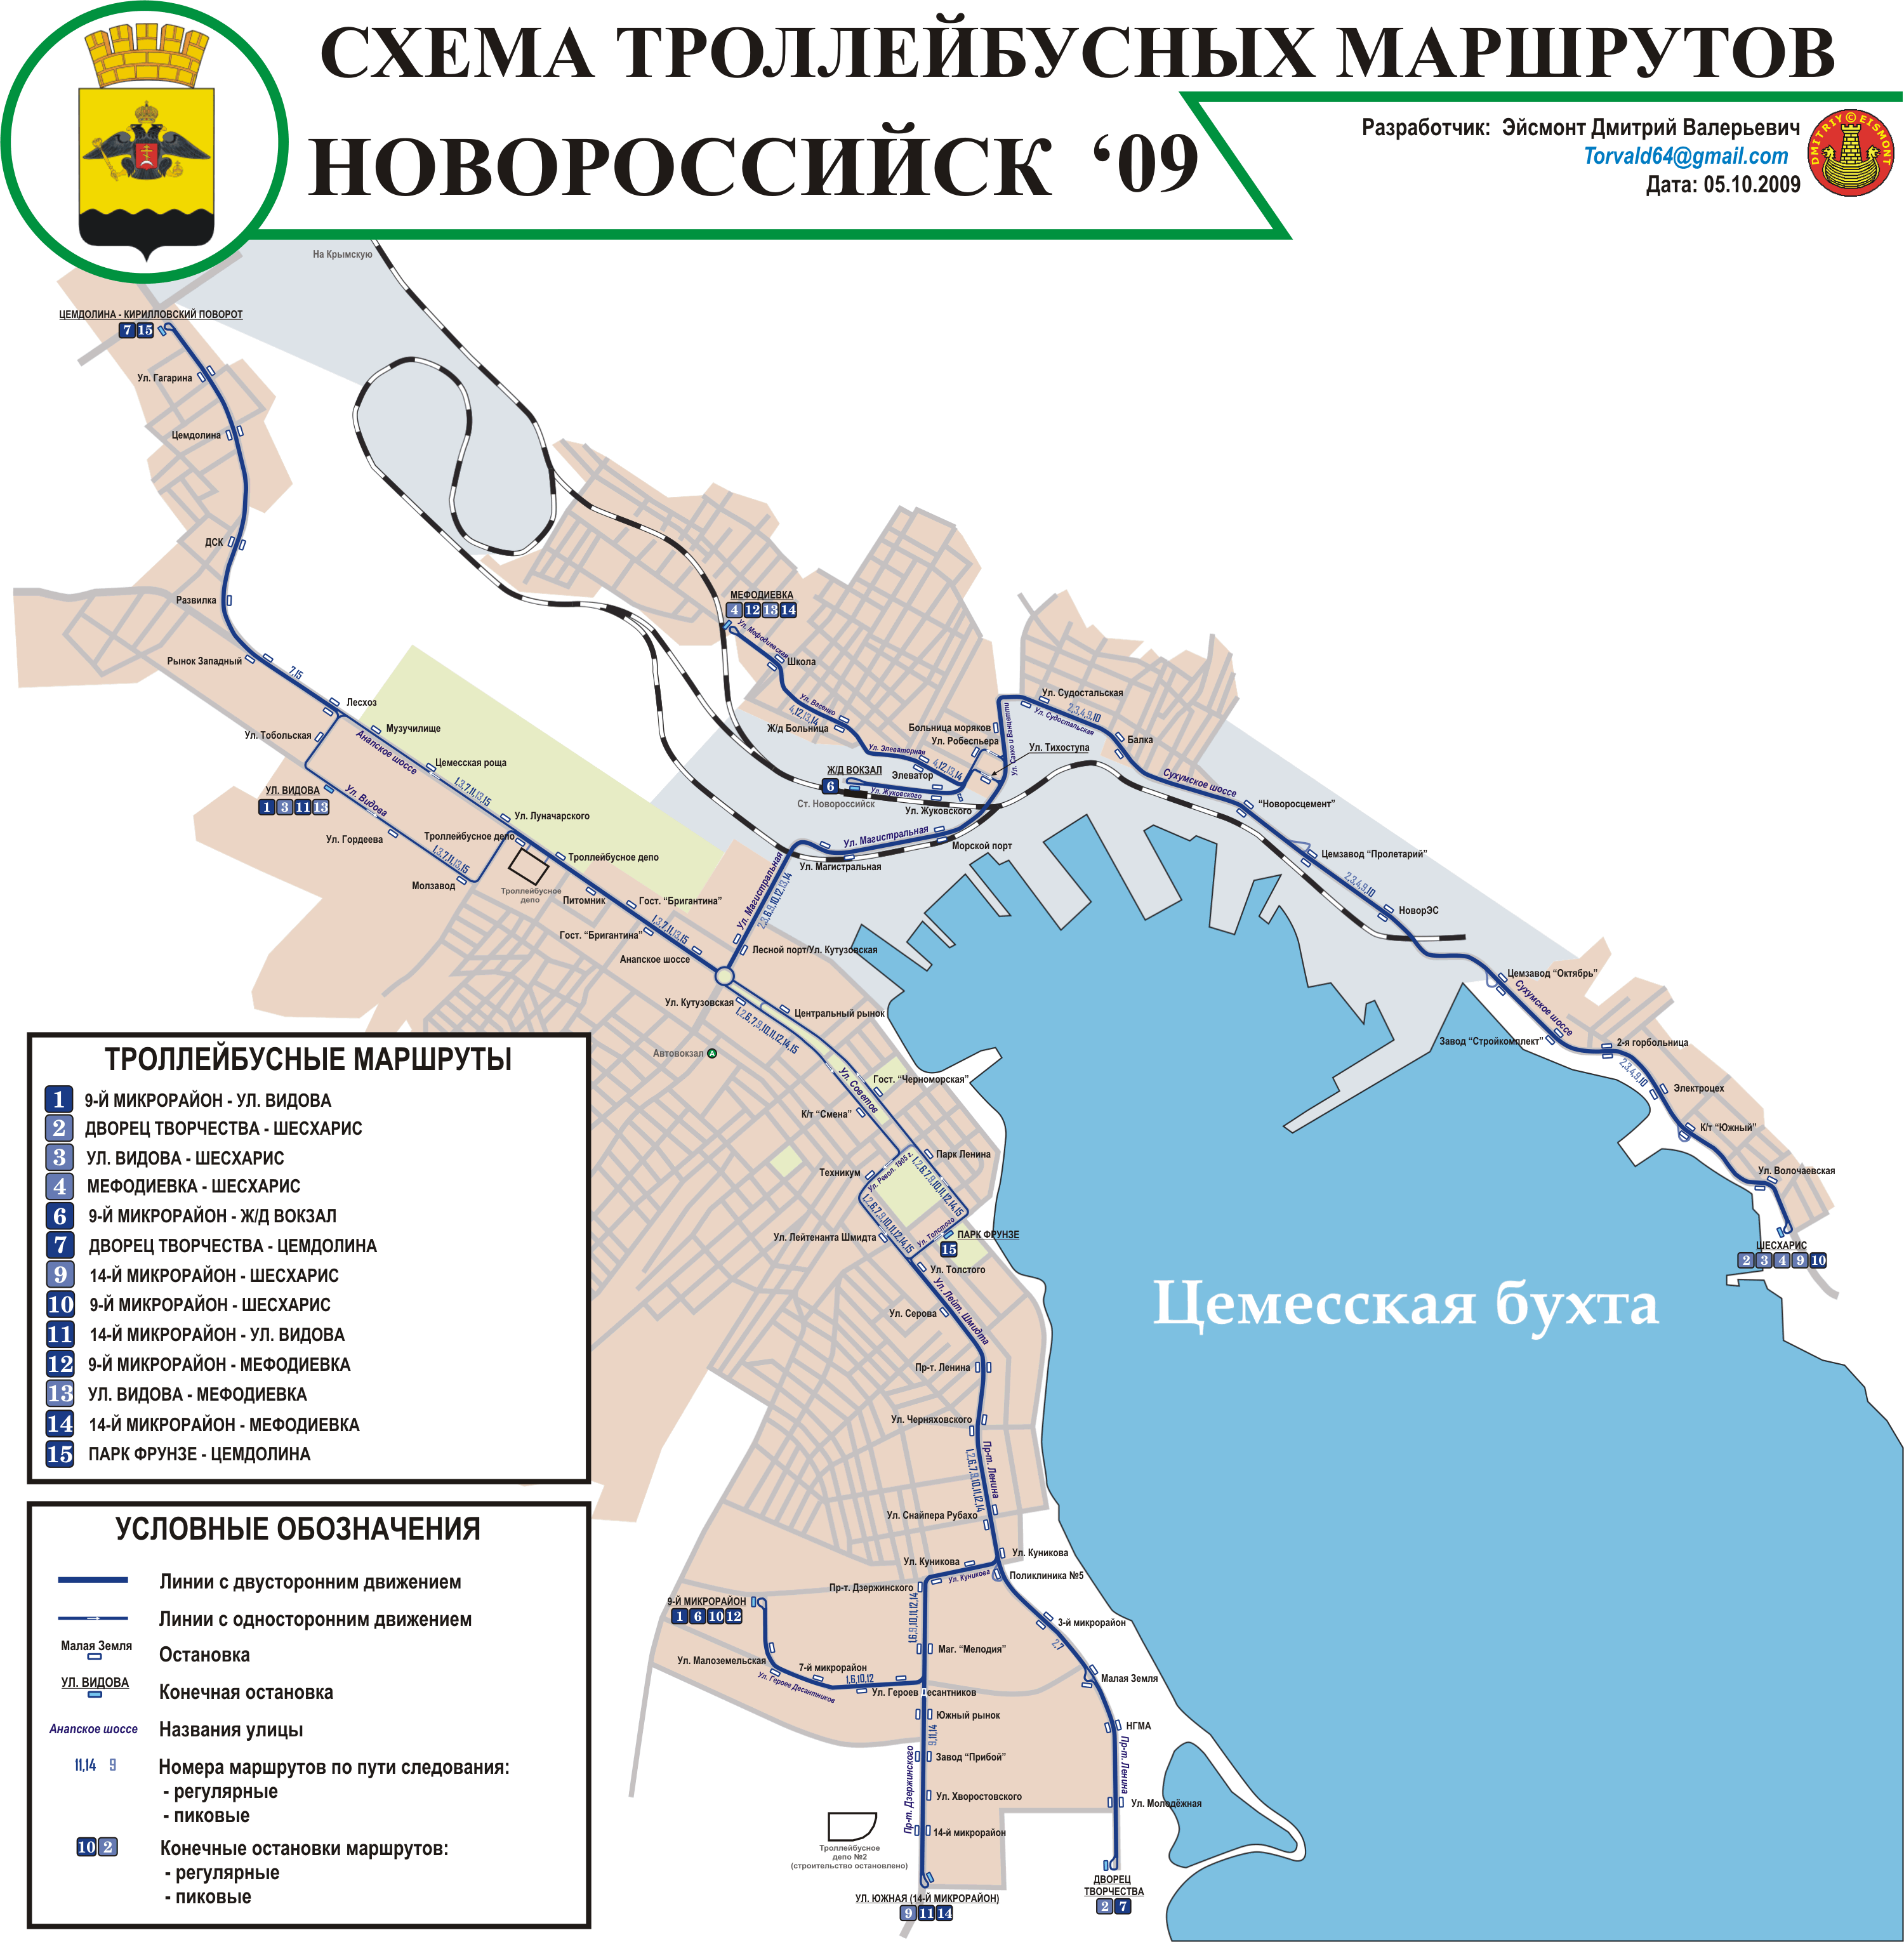 Подробная карта новороссийска